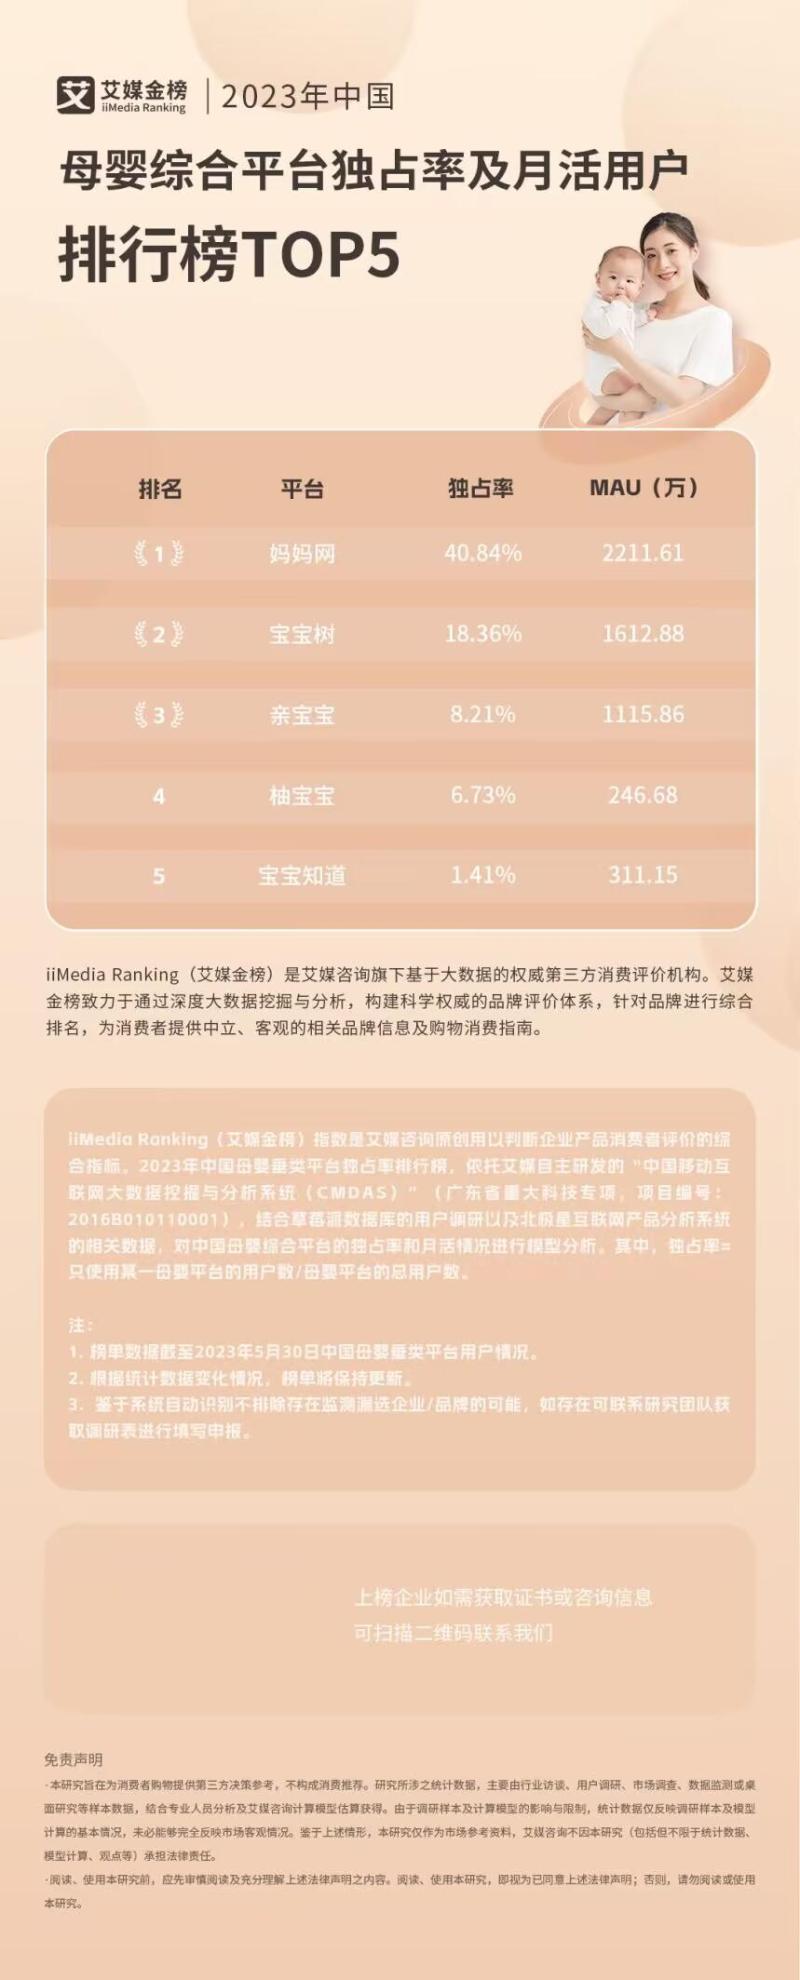 2023年中国母婴平台TOP5榜单